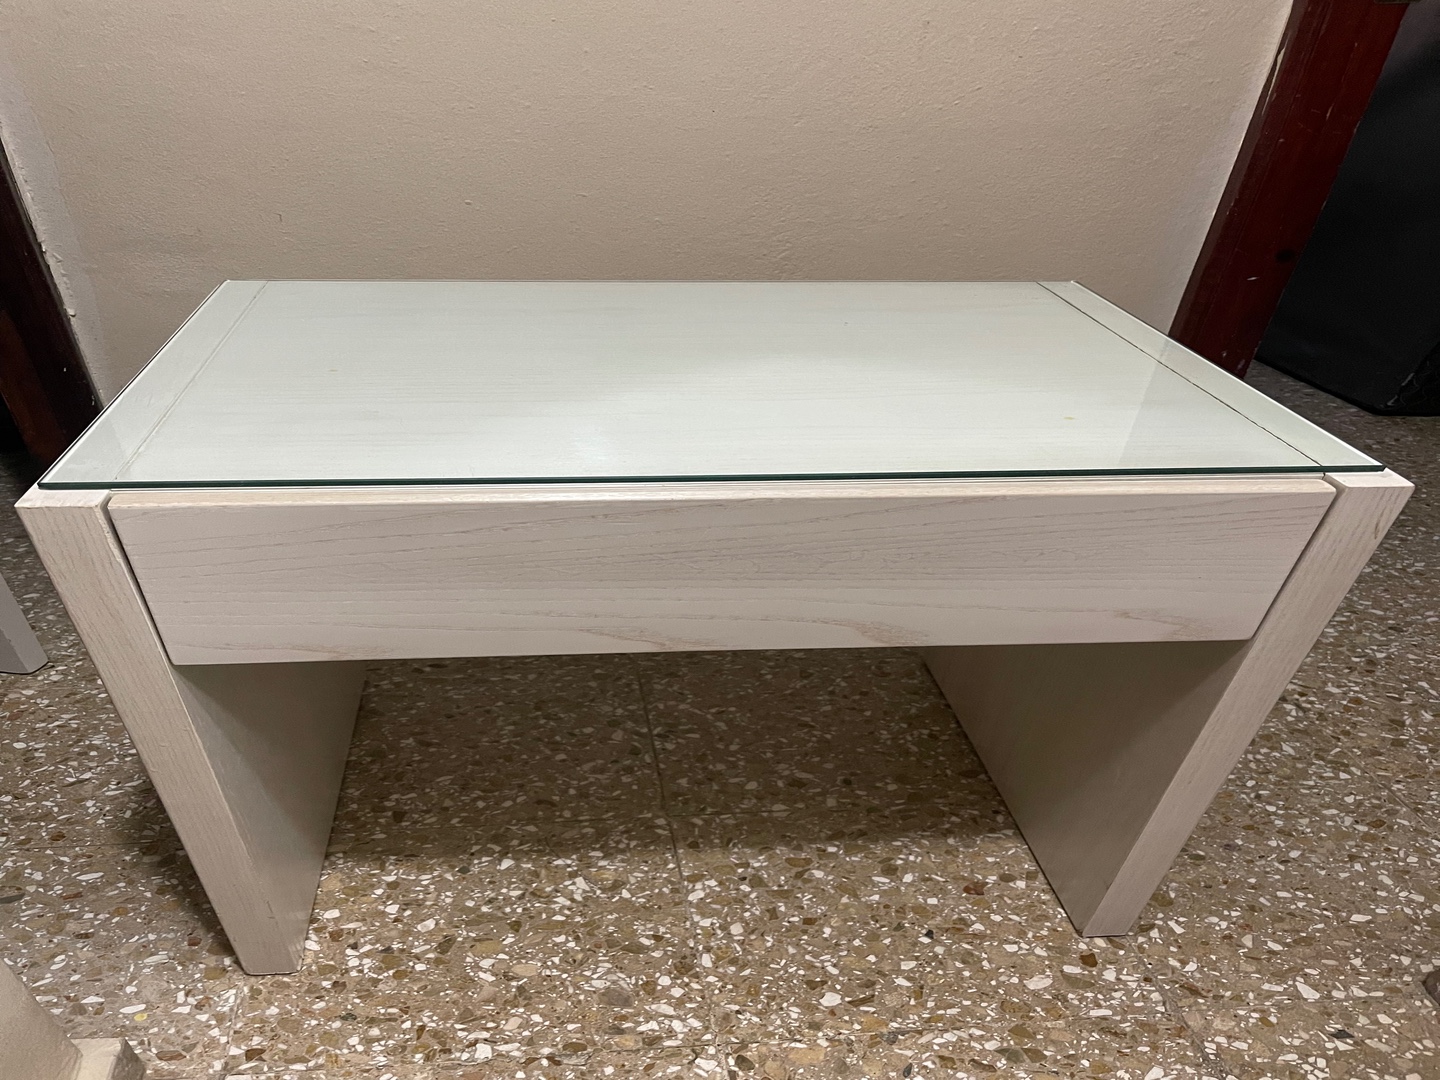 muebles y colchones - 2 mesas de noche en madera color blanco, con tope en cristal. 